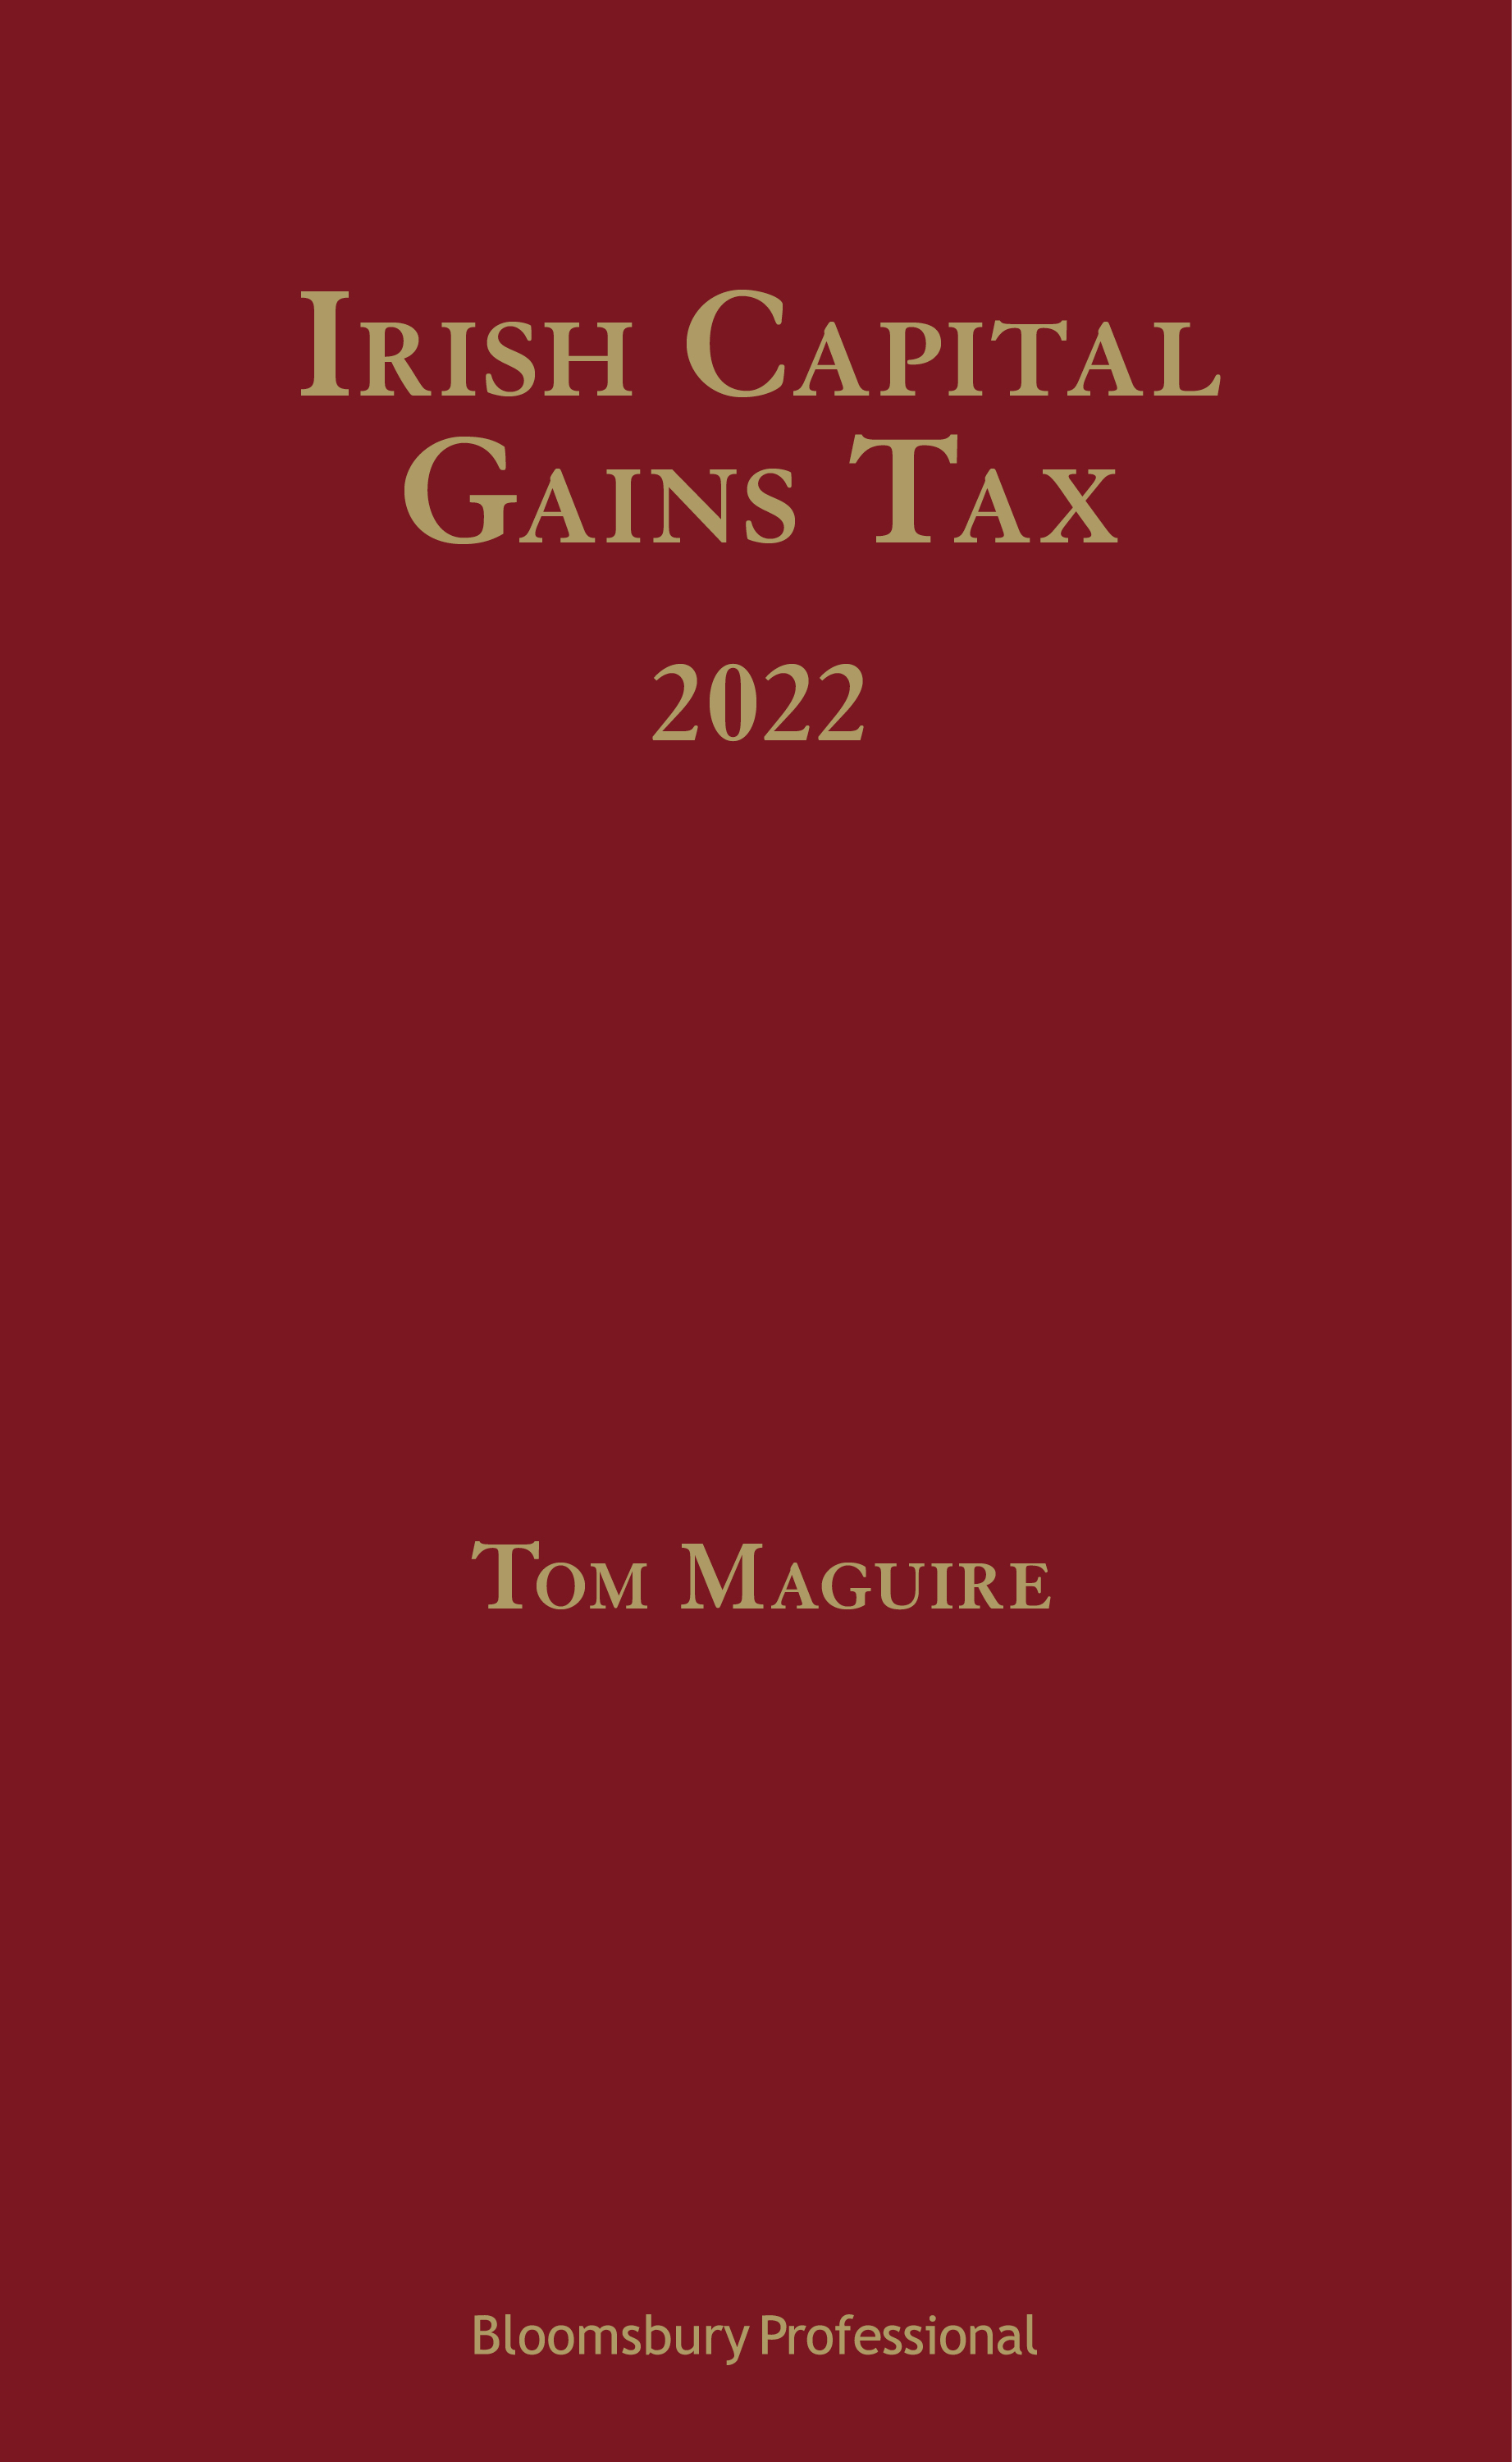 Irish Capital Gains Tax 2022 book jacket